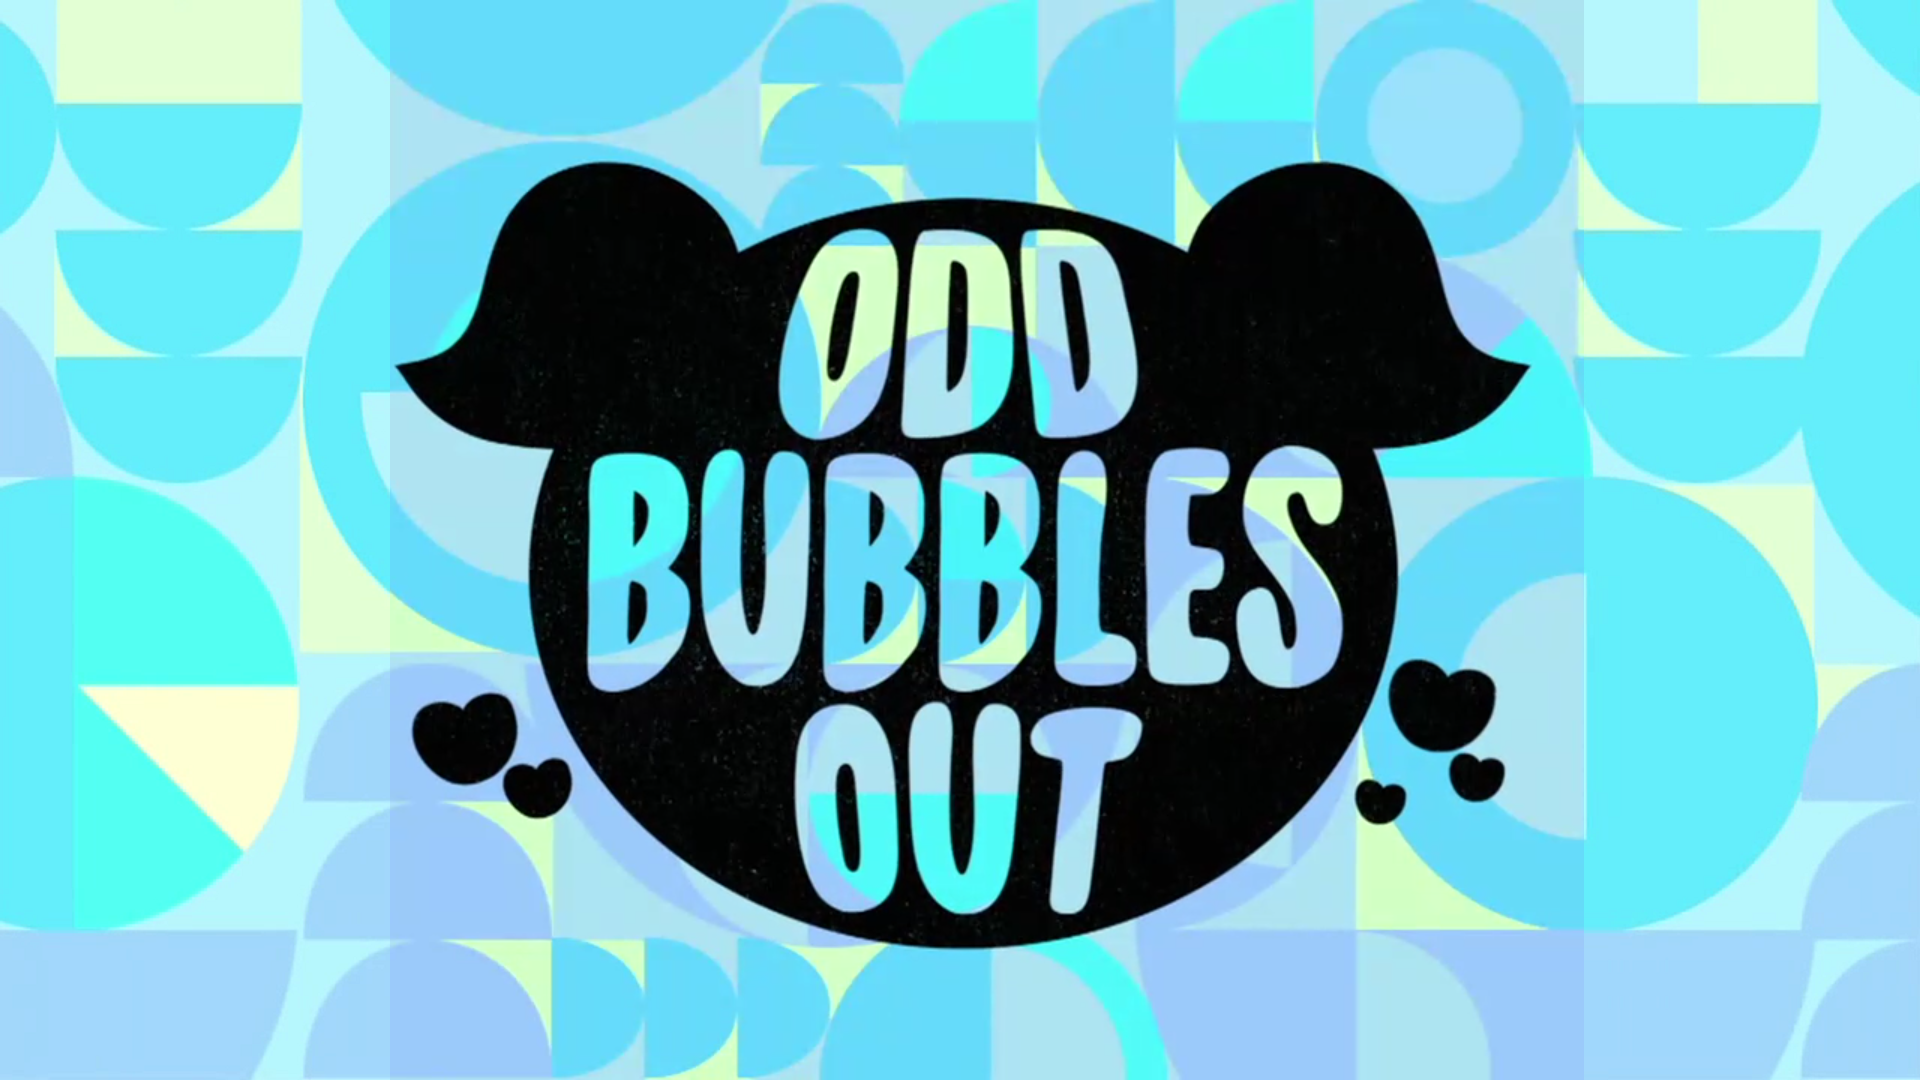 22 серия 1 сезона Odd Bubbles Out